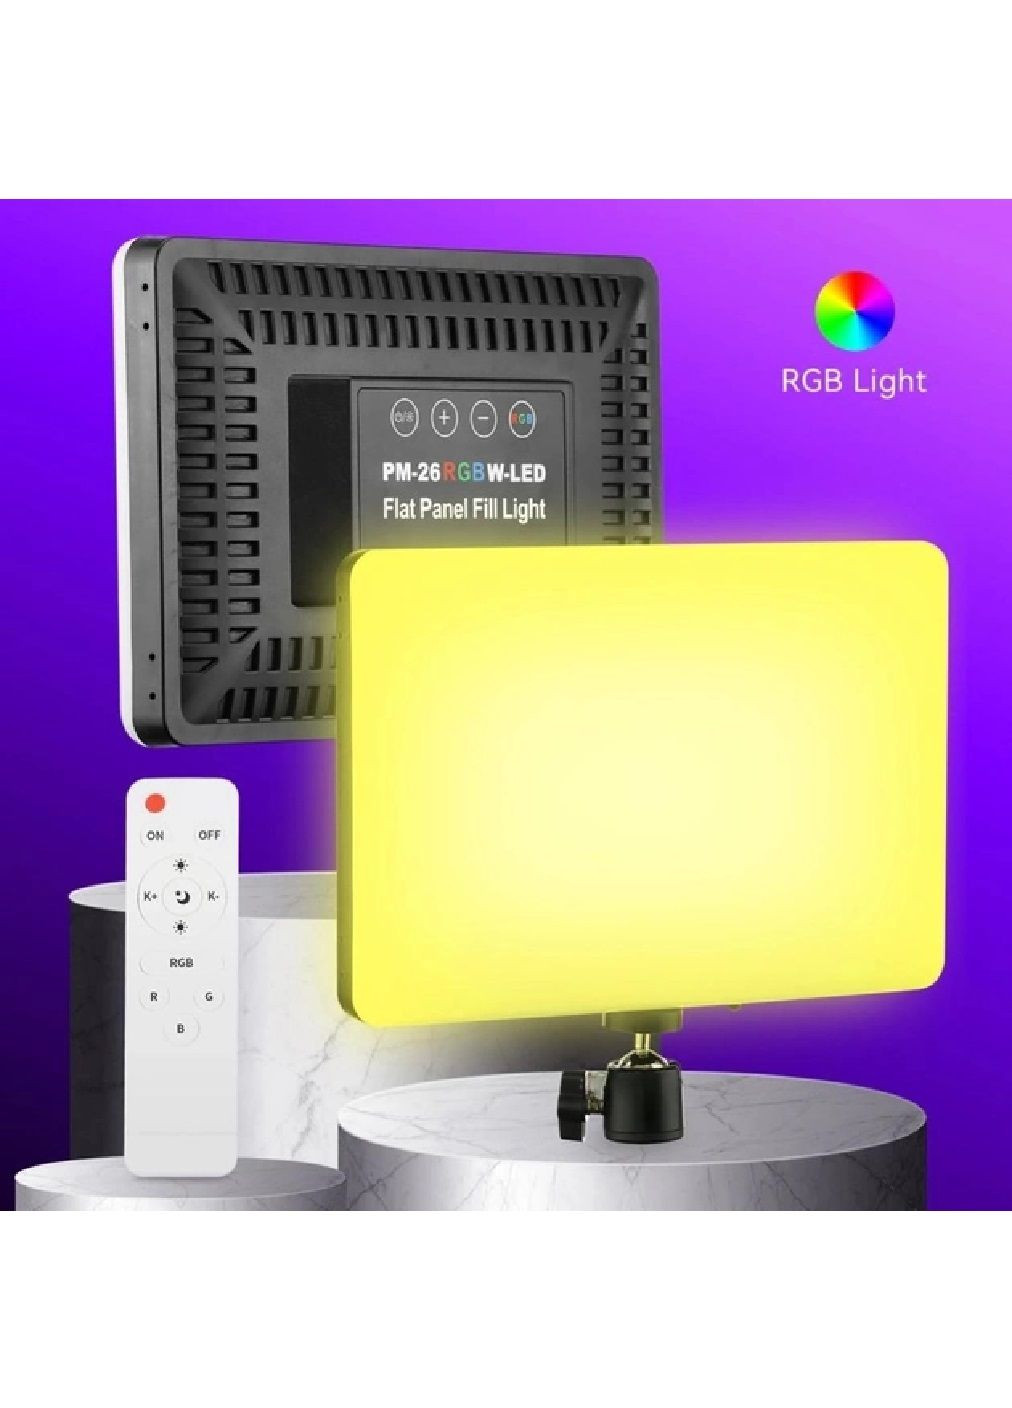 Светодиодная студийная прямоугольная разноцветная LED лампа с пультом штативом 2 метра 2 в 1 (476347-Prob) Unbranded (279518096)